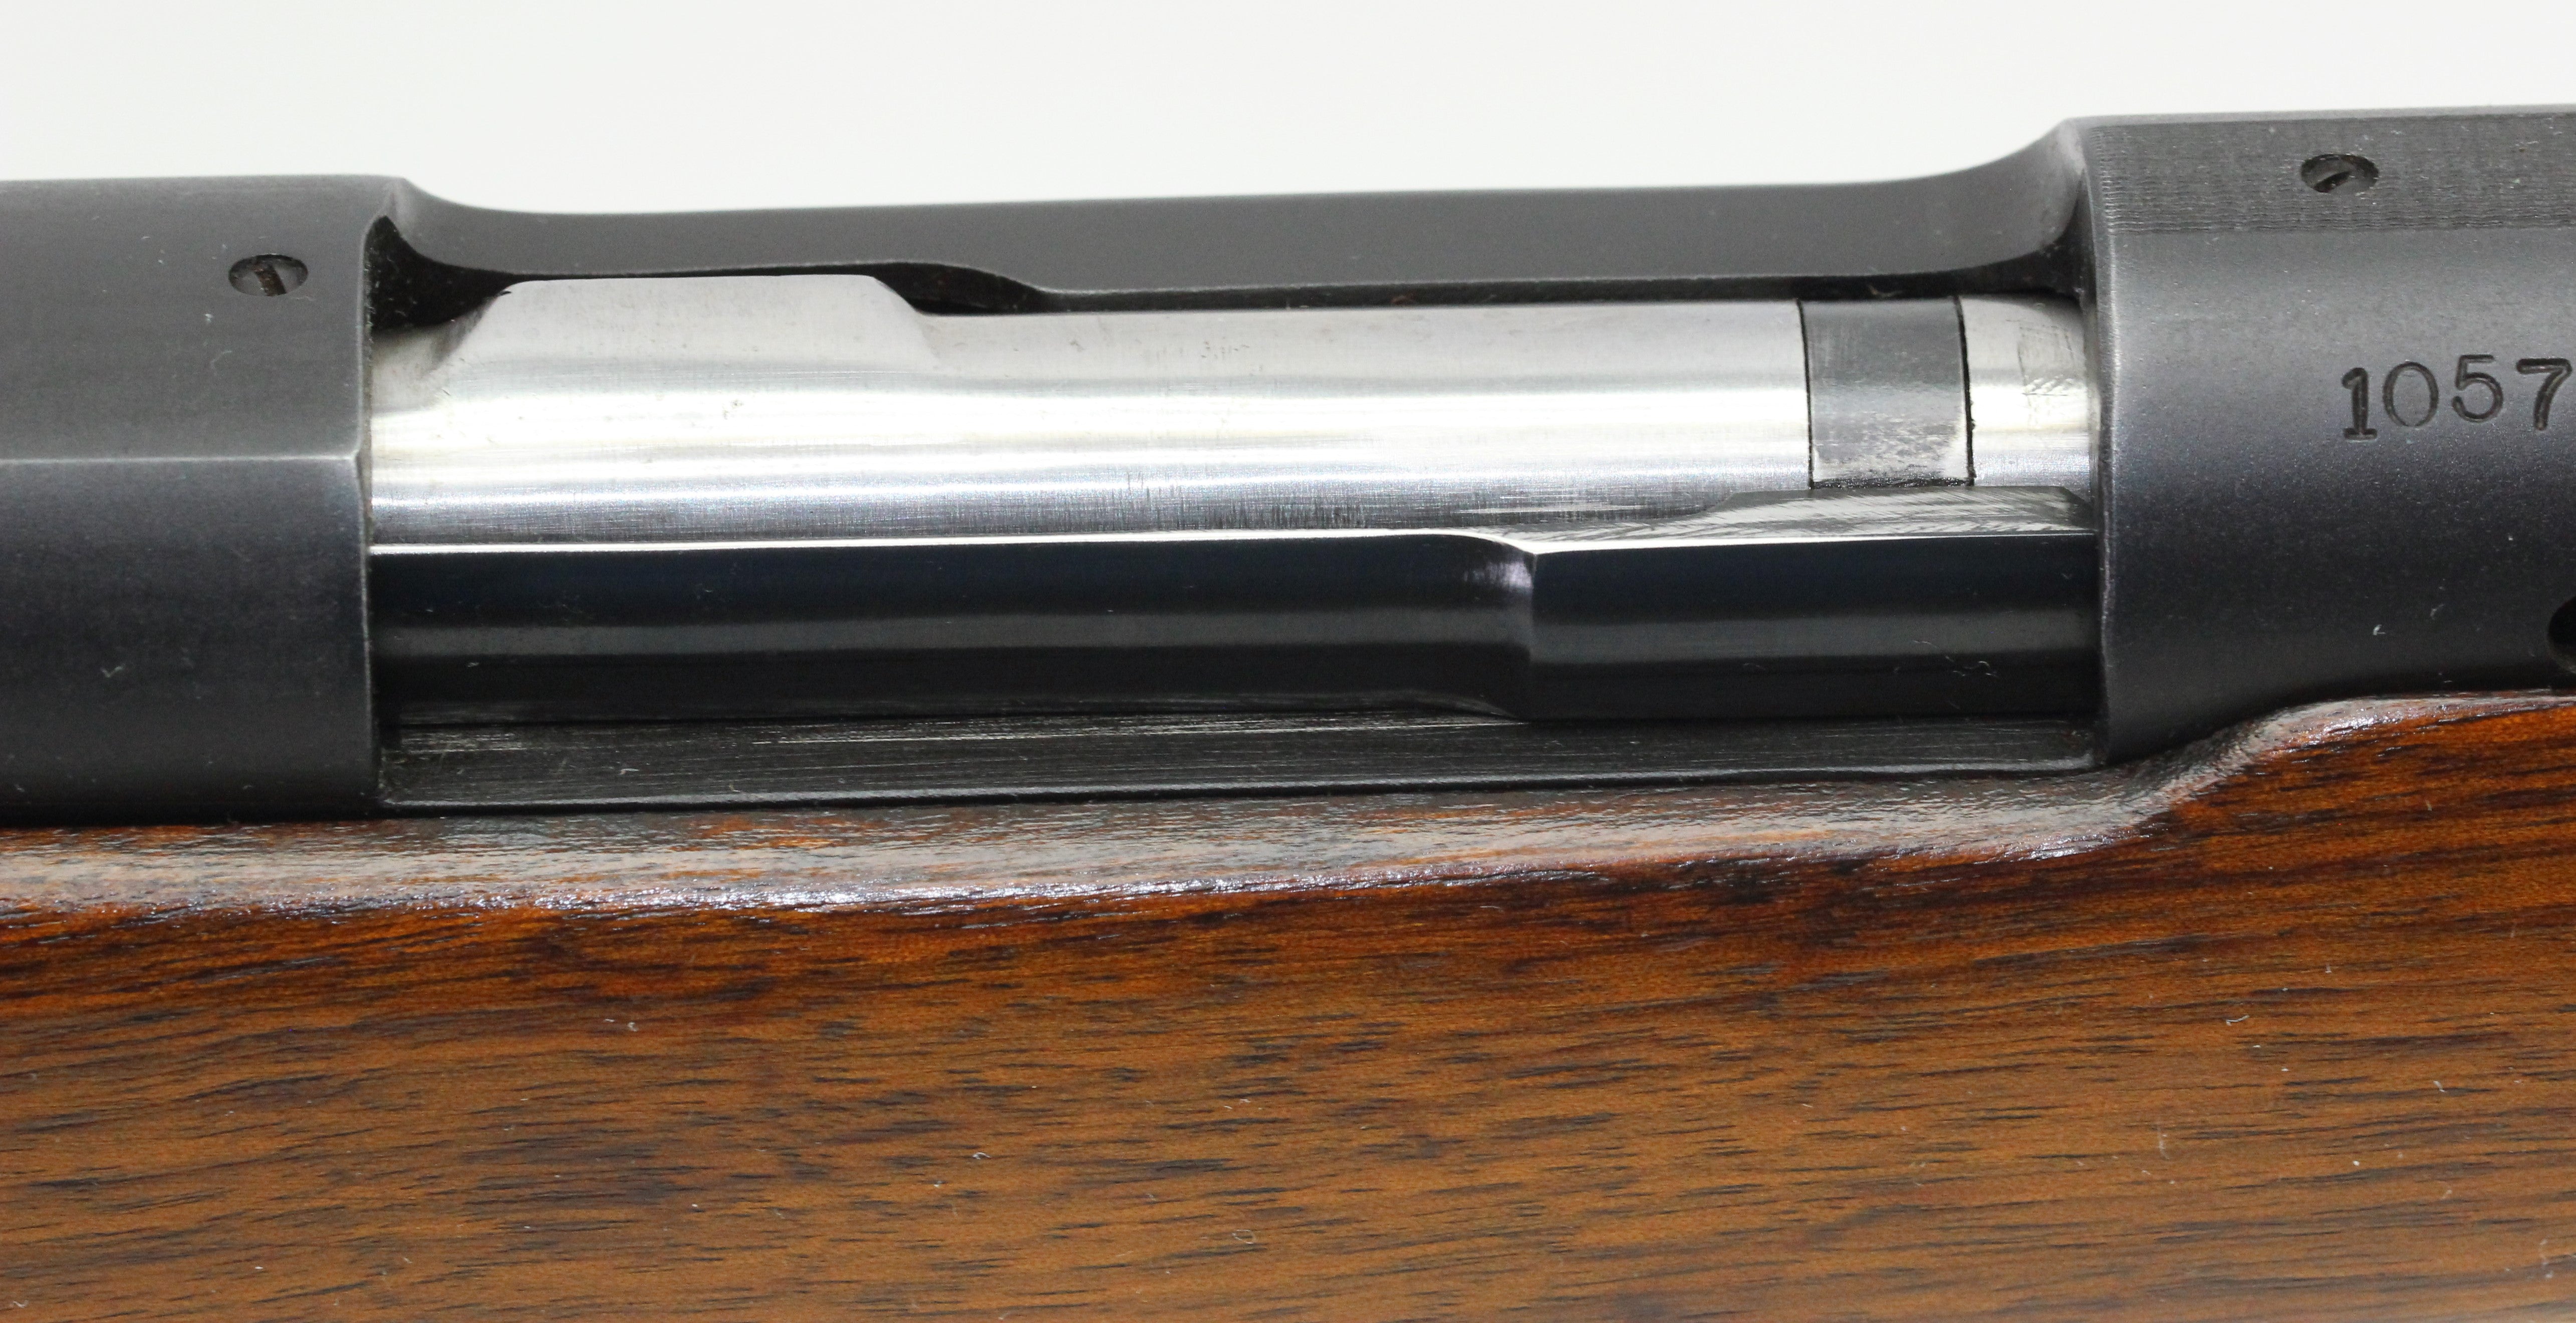 .270 W.C.F. Standard Rifle - 1949